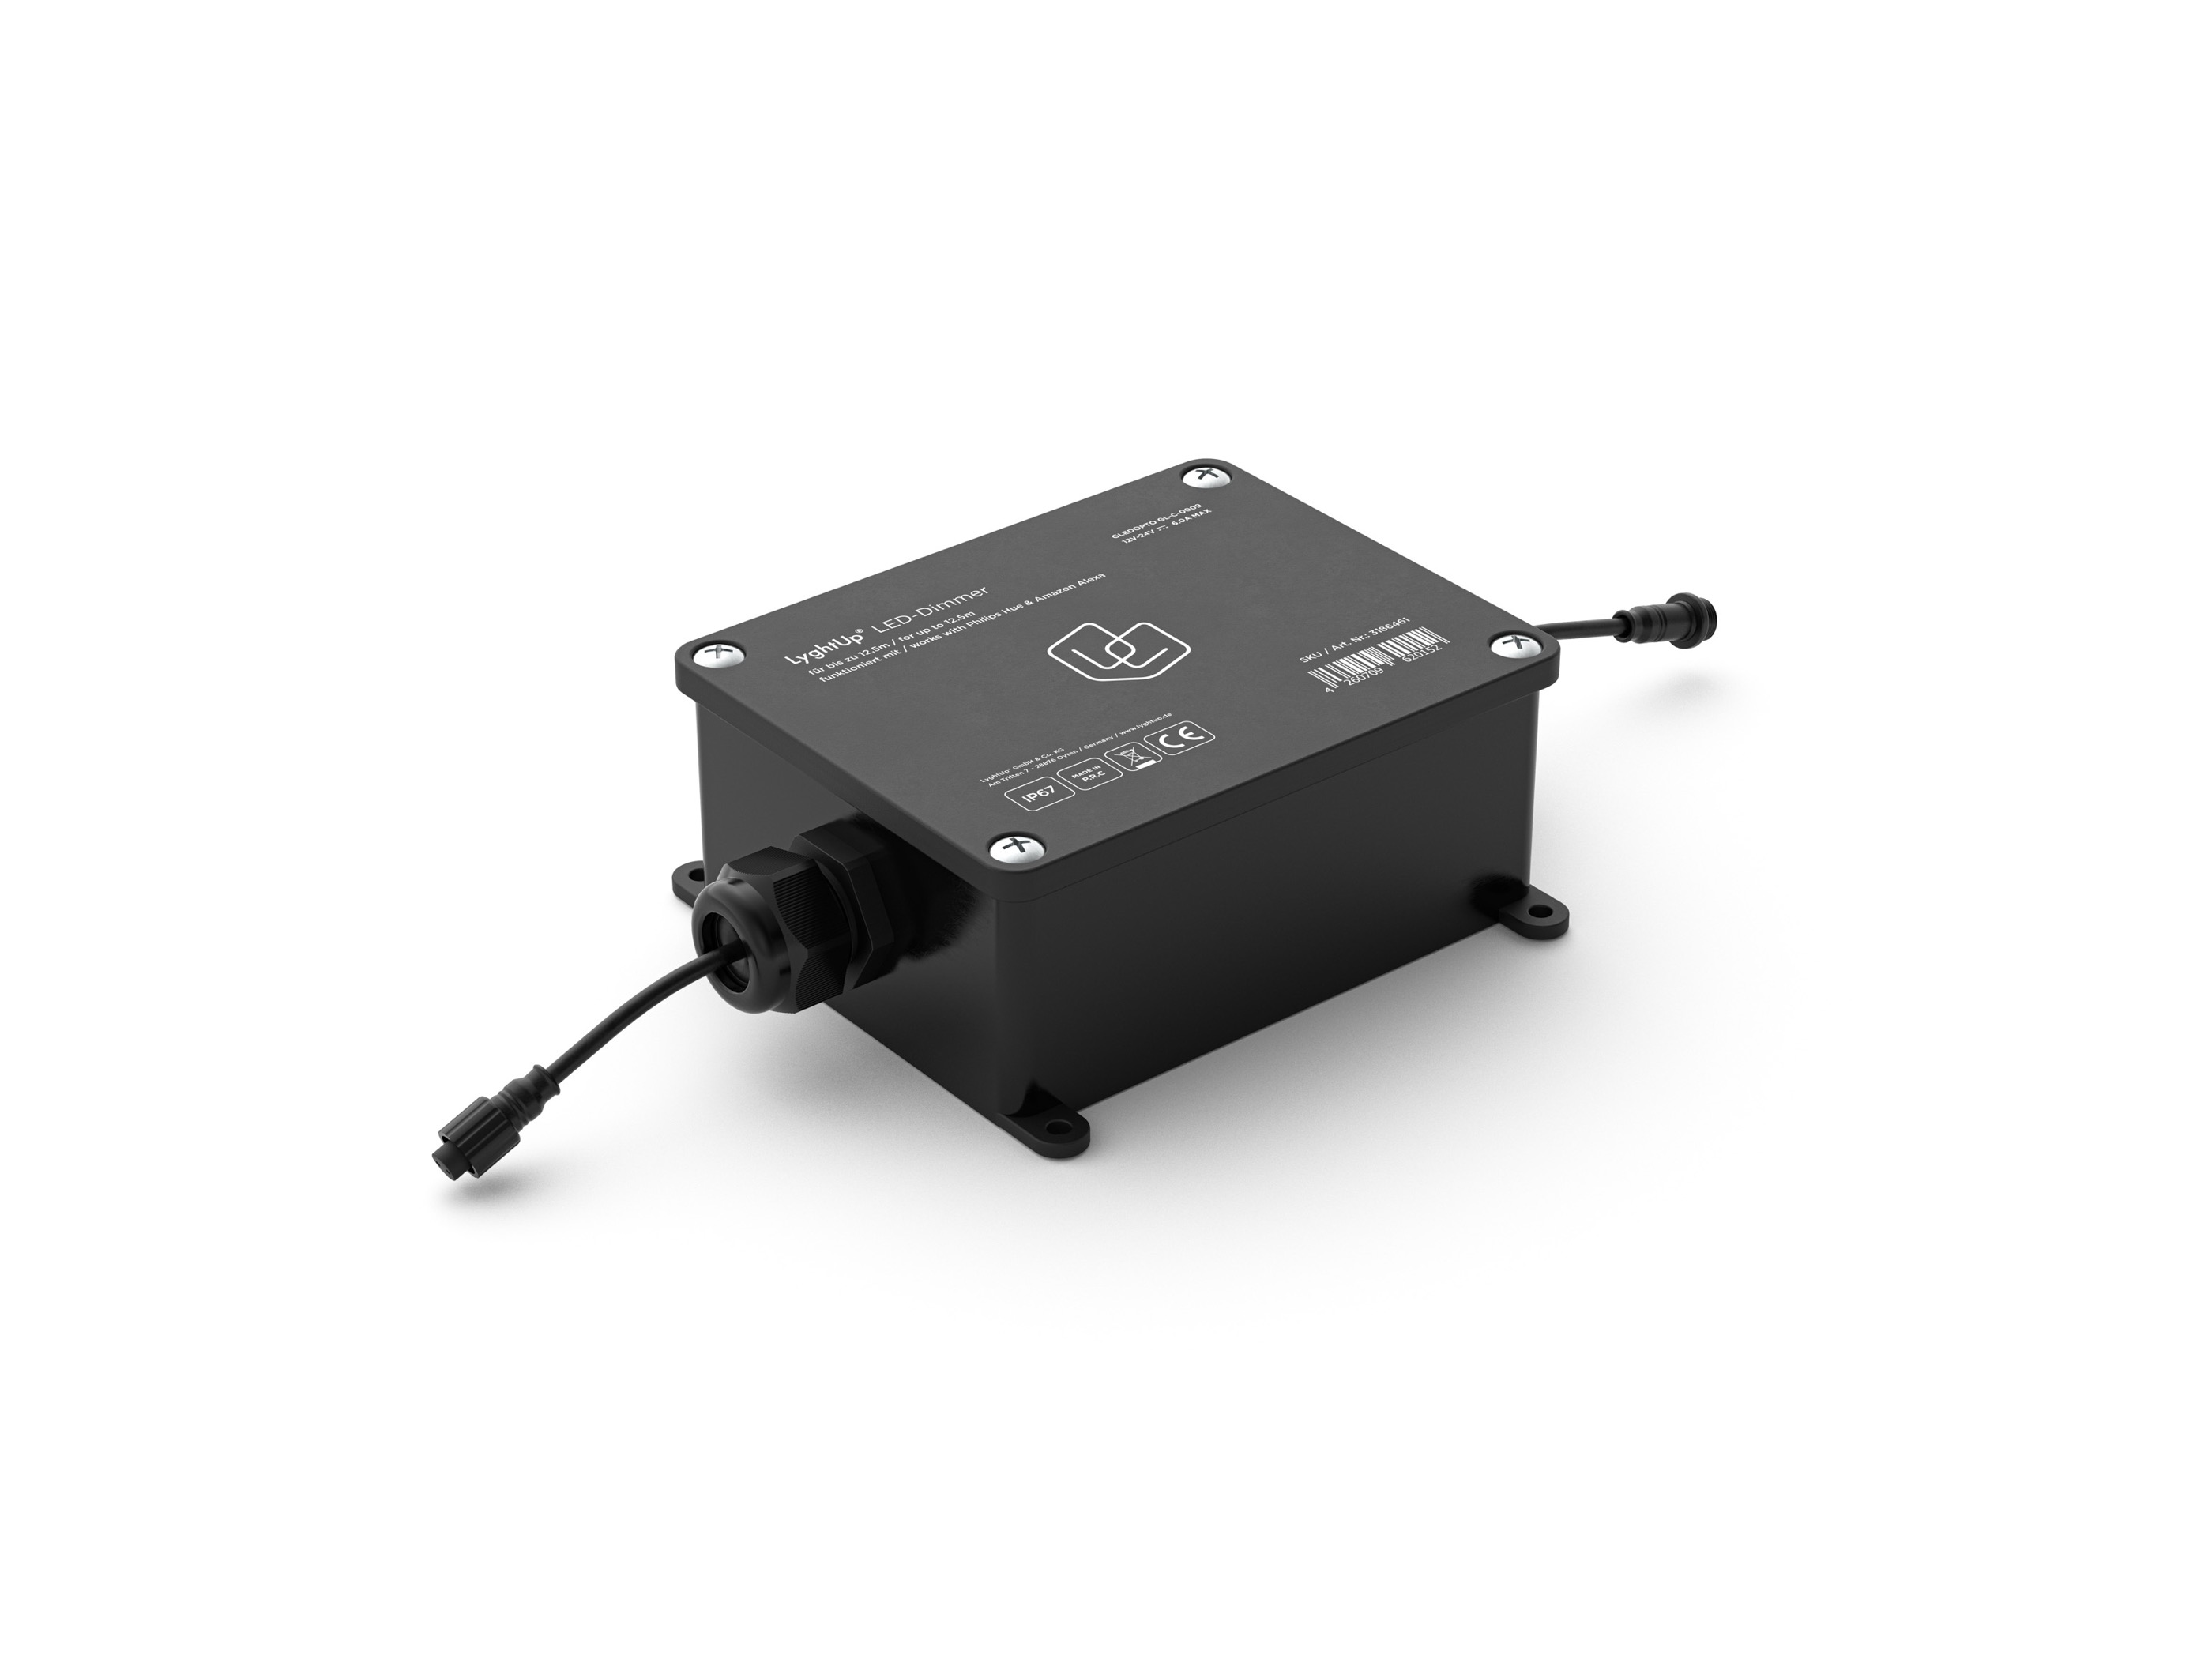 ZigBee Dimmer — kompatibel mit Philips Hue Alexa Echo Plus